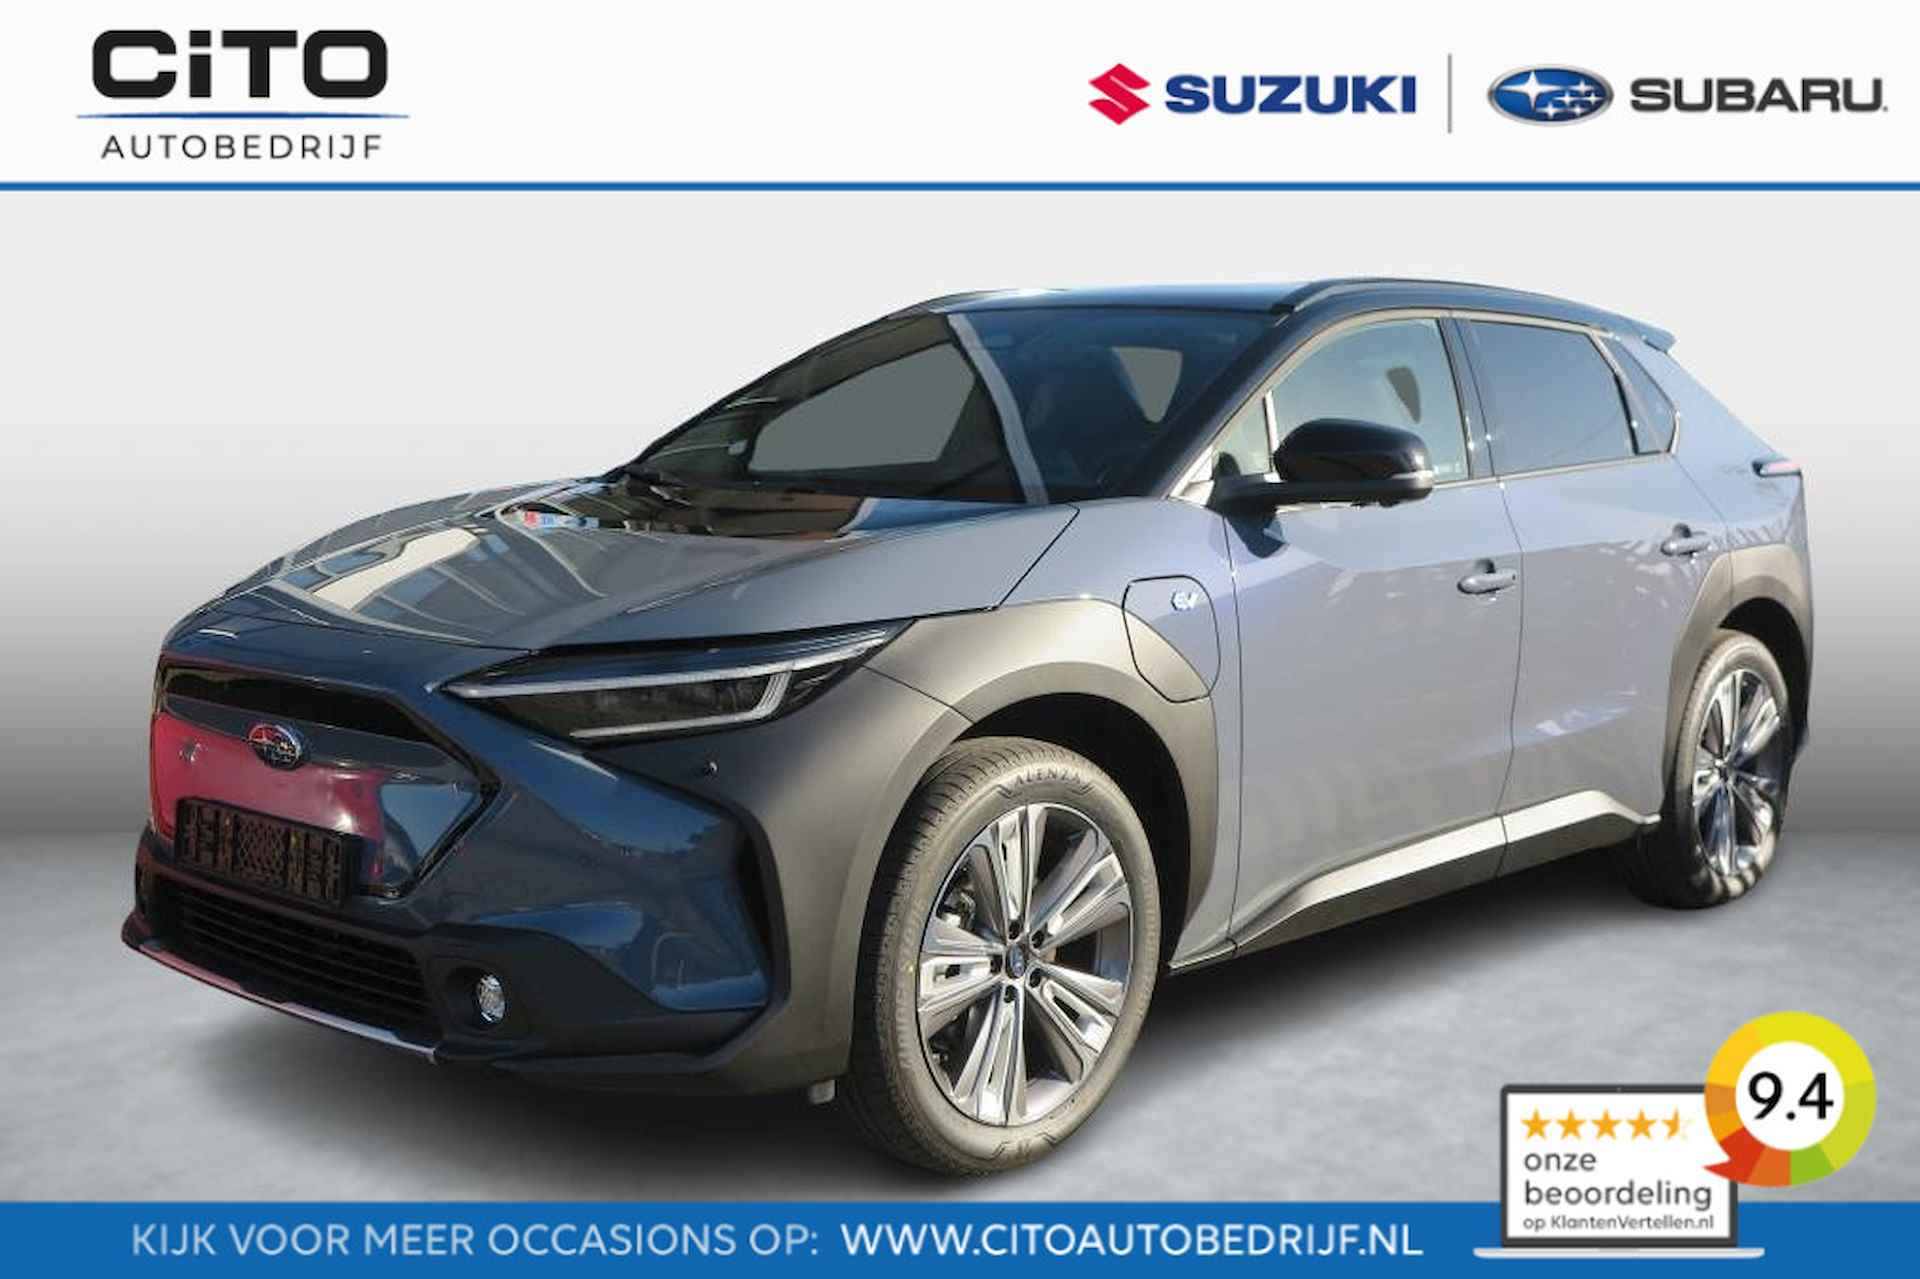 Subaru SOLTERRA SkyPackage 71 kWh Two Tone | Nieuw uit voorraad leverbaar | ACTIEKORTING € 6.000 |  8 Jaar Garantie - 1/37